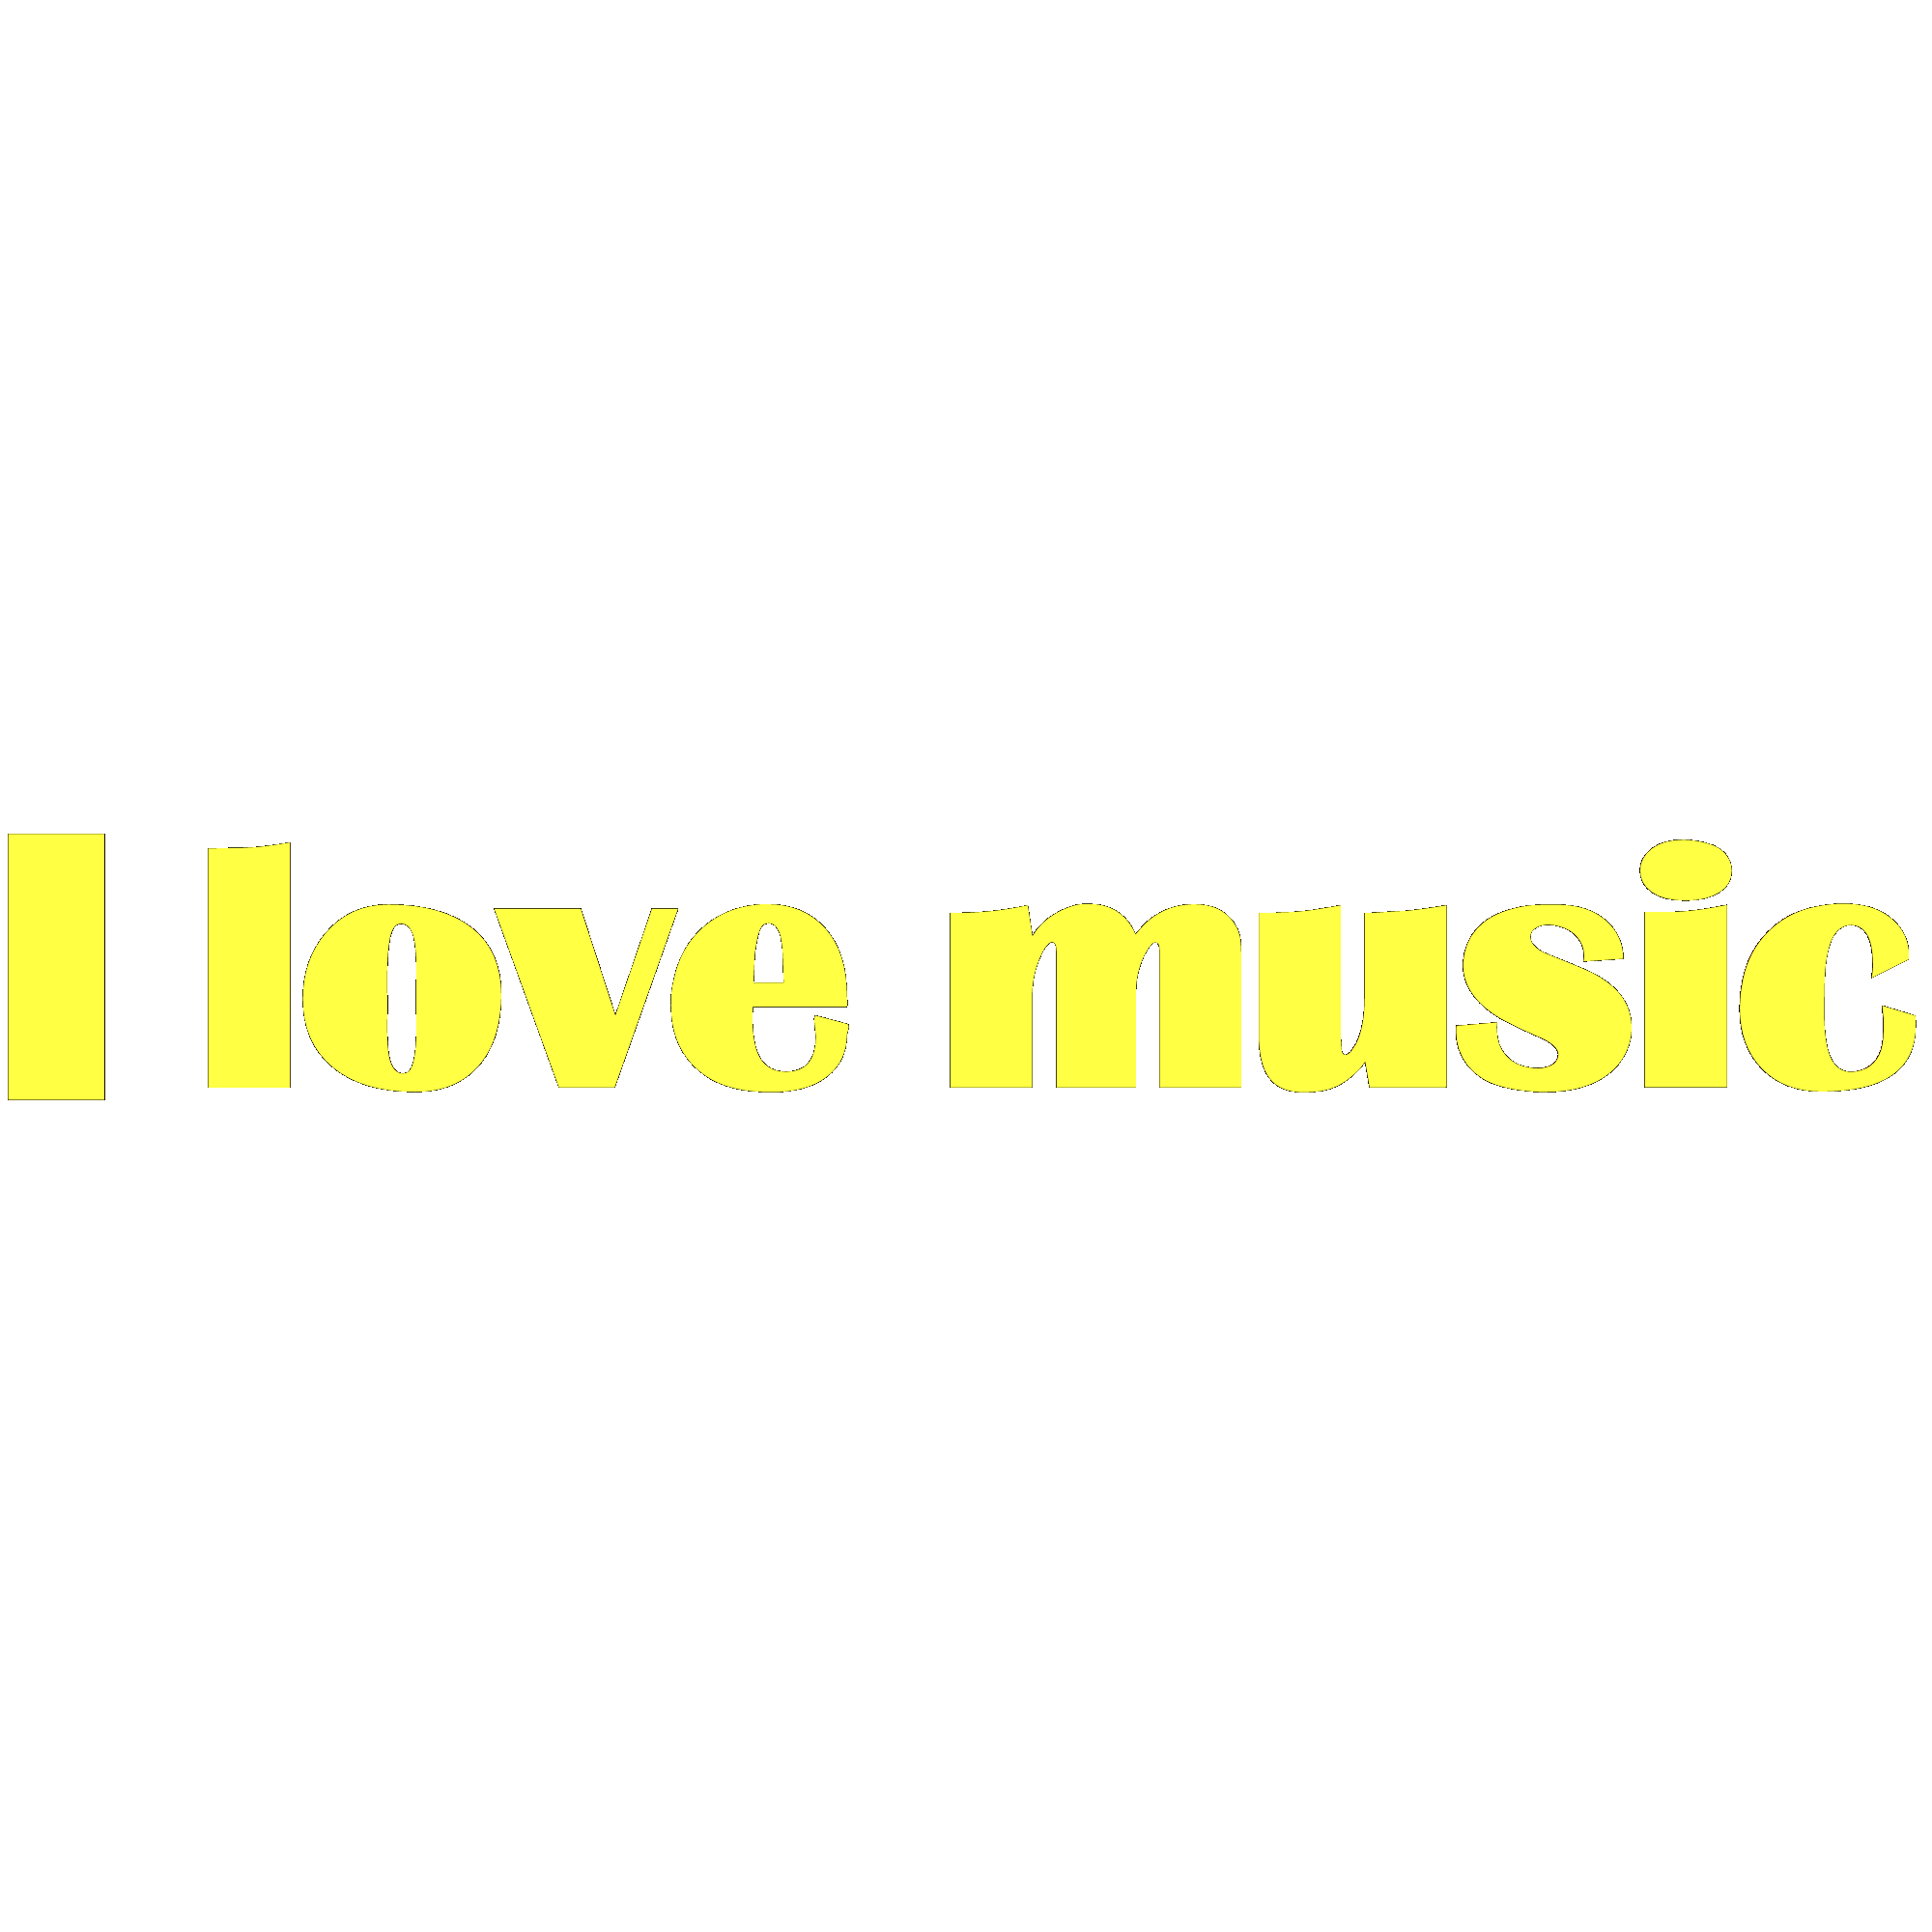 I love music by Susanlu4esm